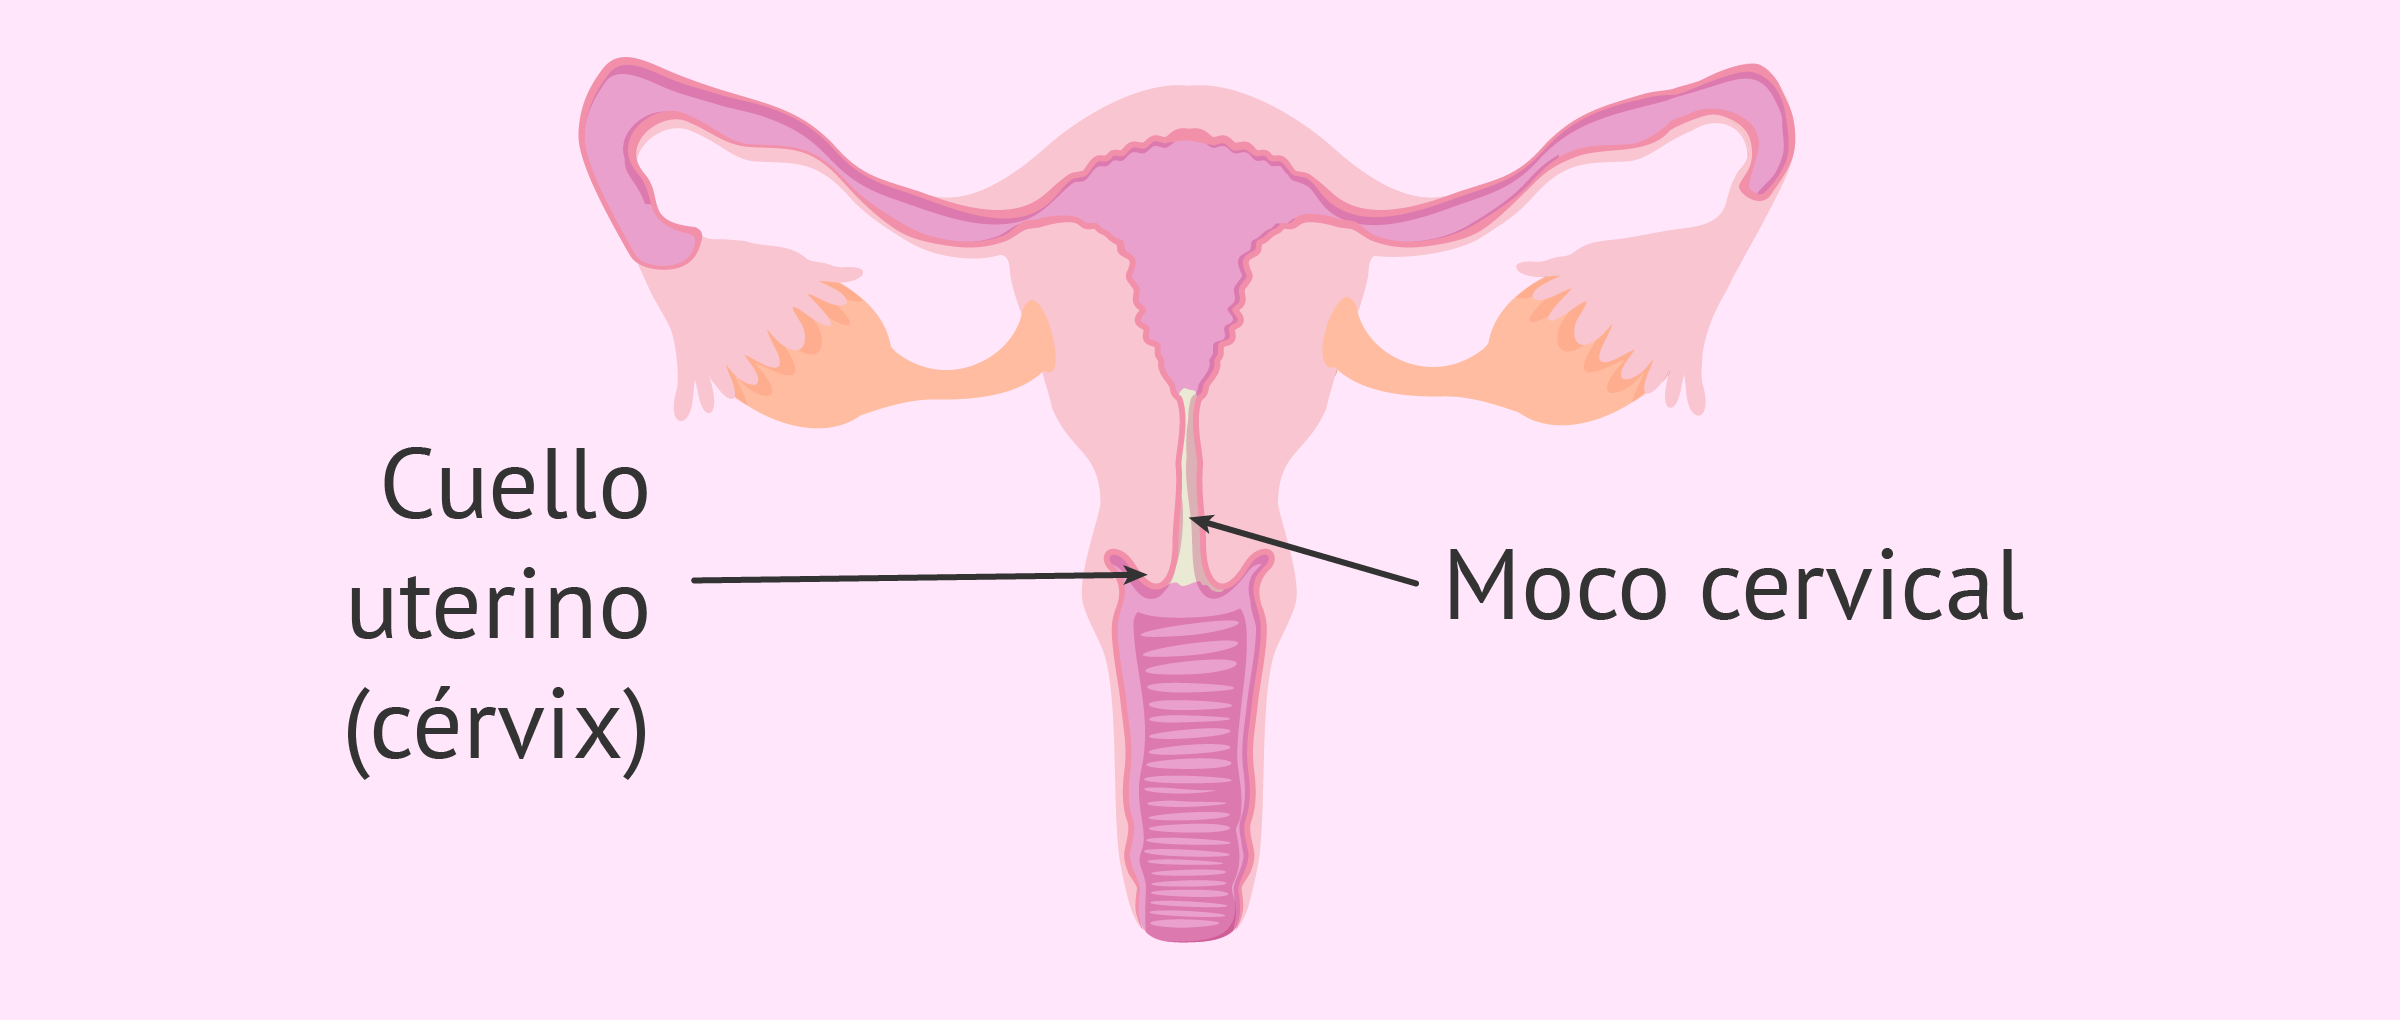 Lo que debes saber sobre el moco cervical y la secreción fértil